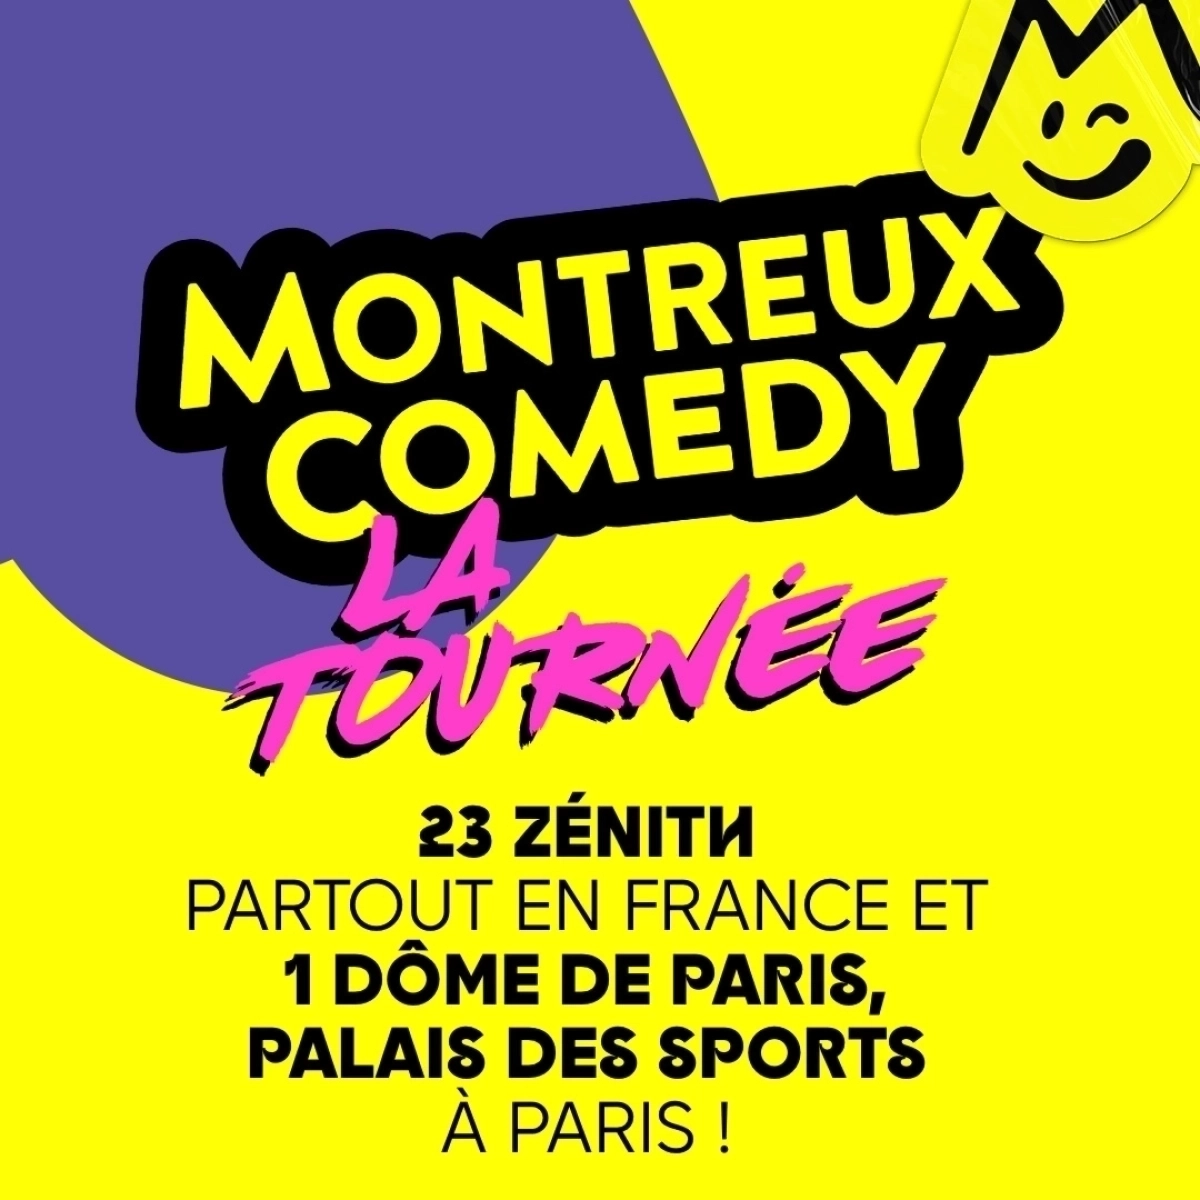 Montreux Comedy - La Tournée at Zenith Omega Toulon Tickets